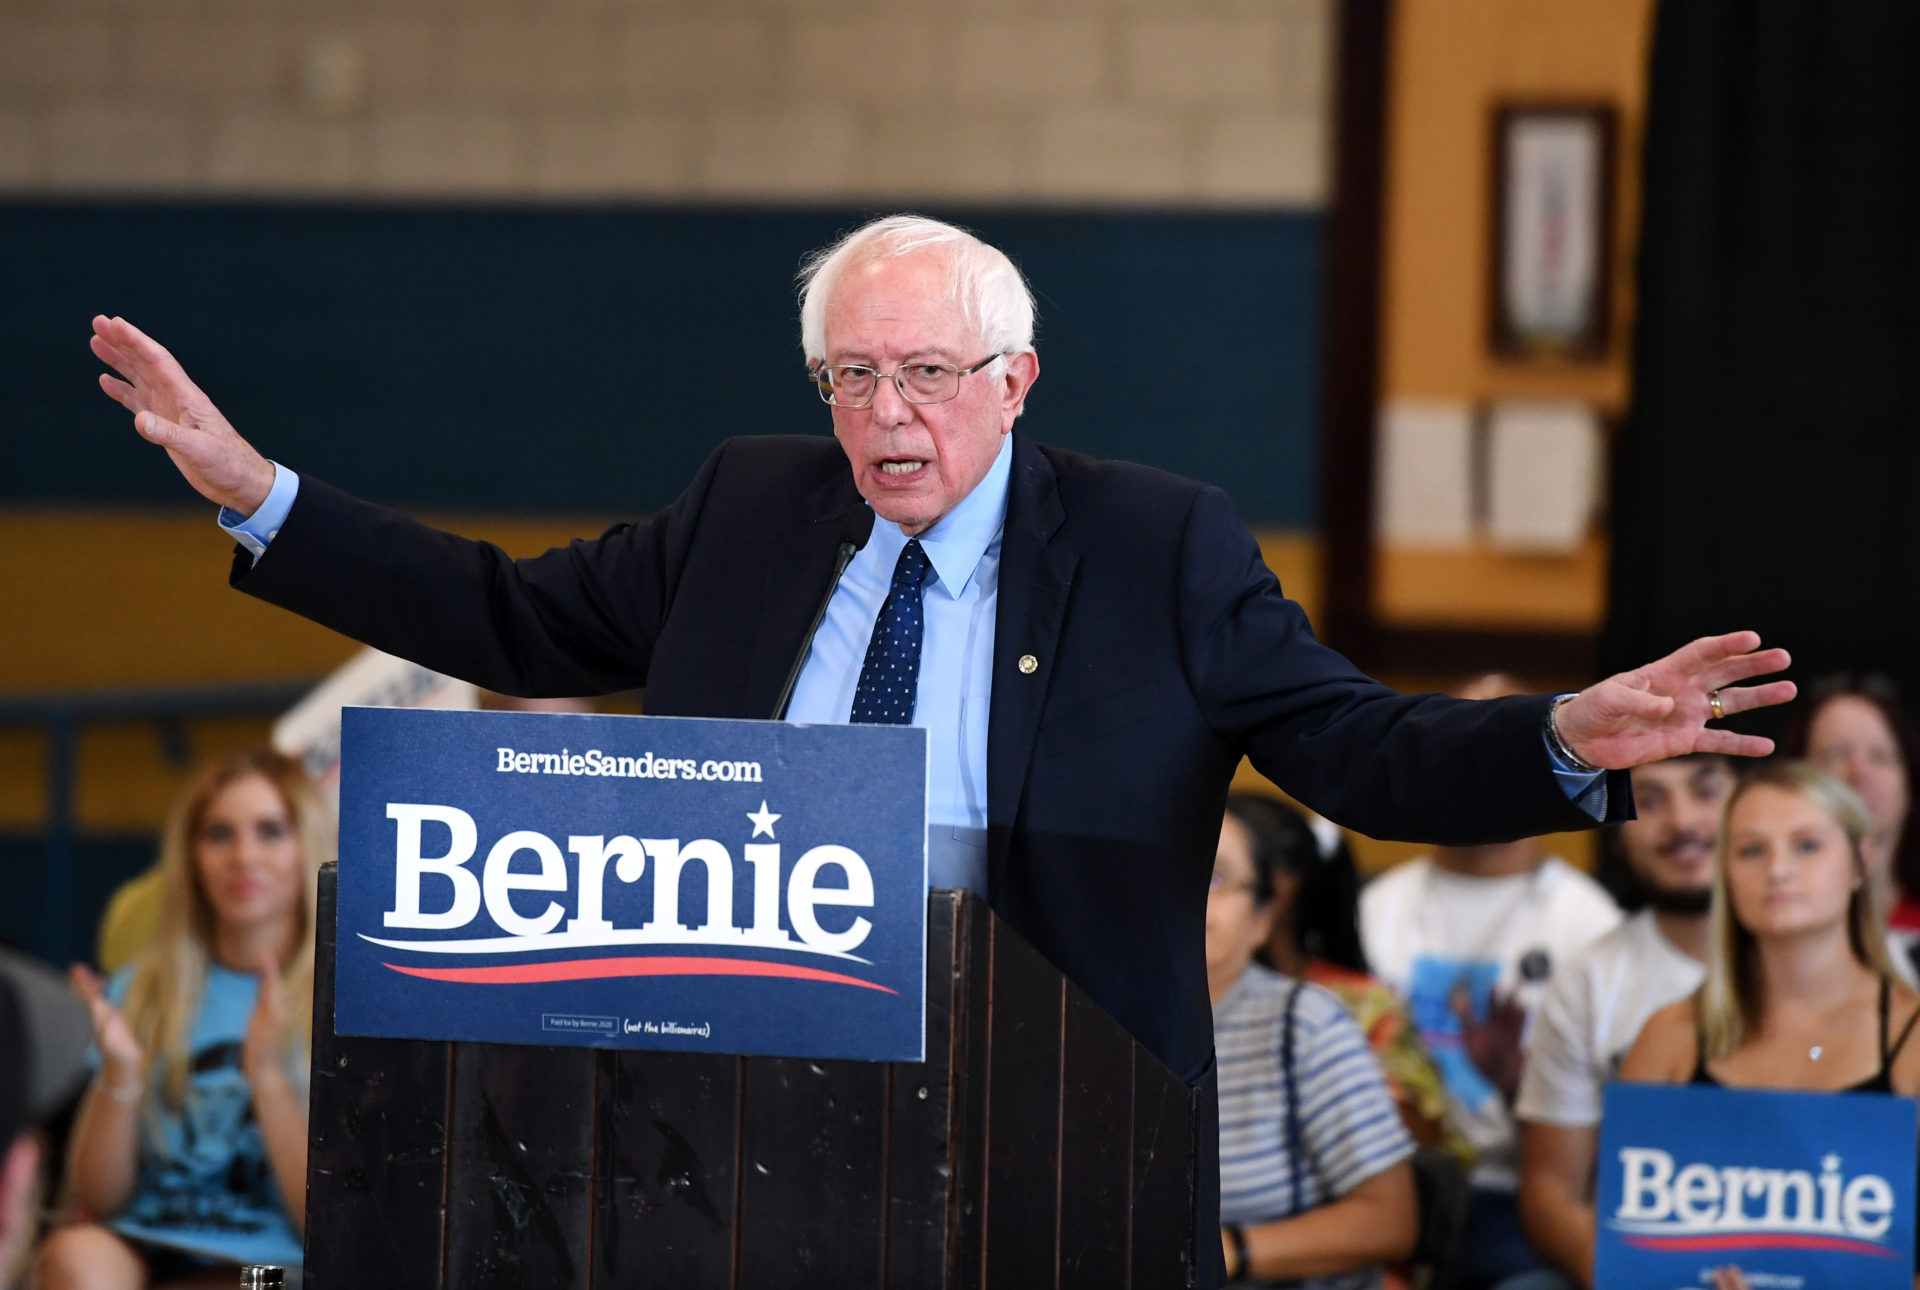 omdrejningspunkt bunke Burger On Health Care, Sanders Edges Biden Among Democratic Primary Voters